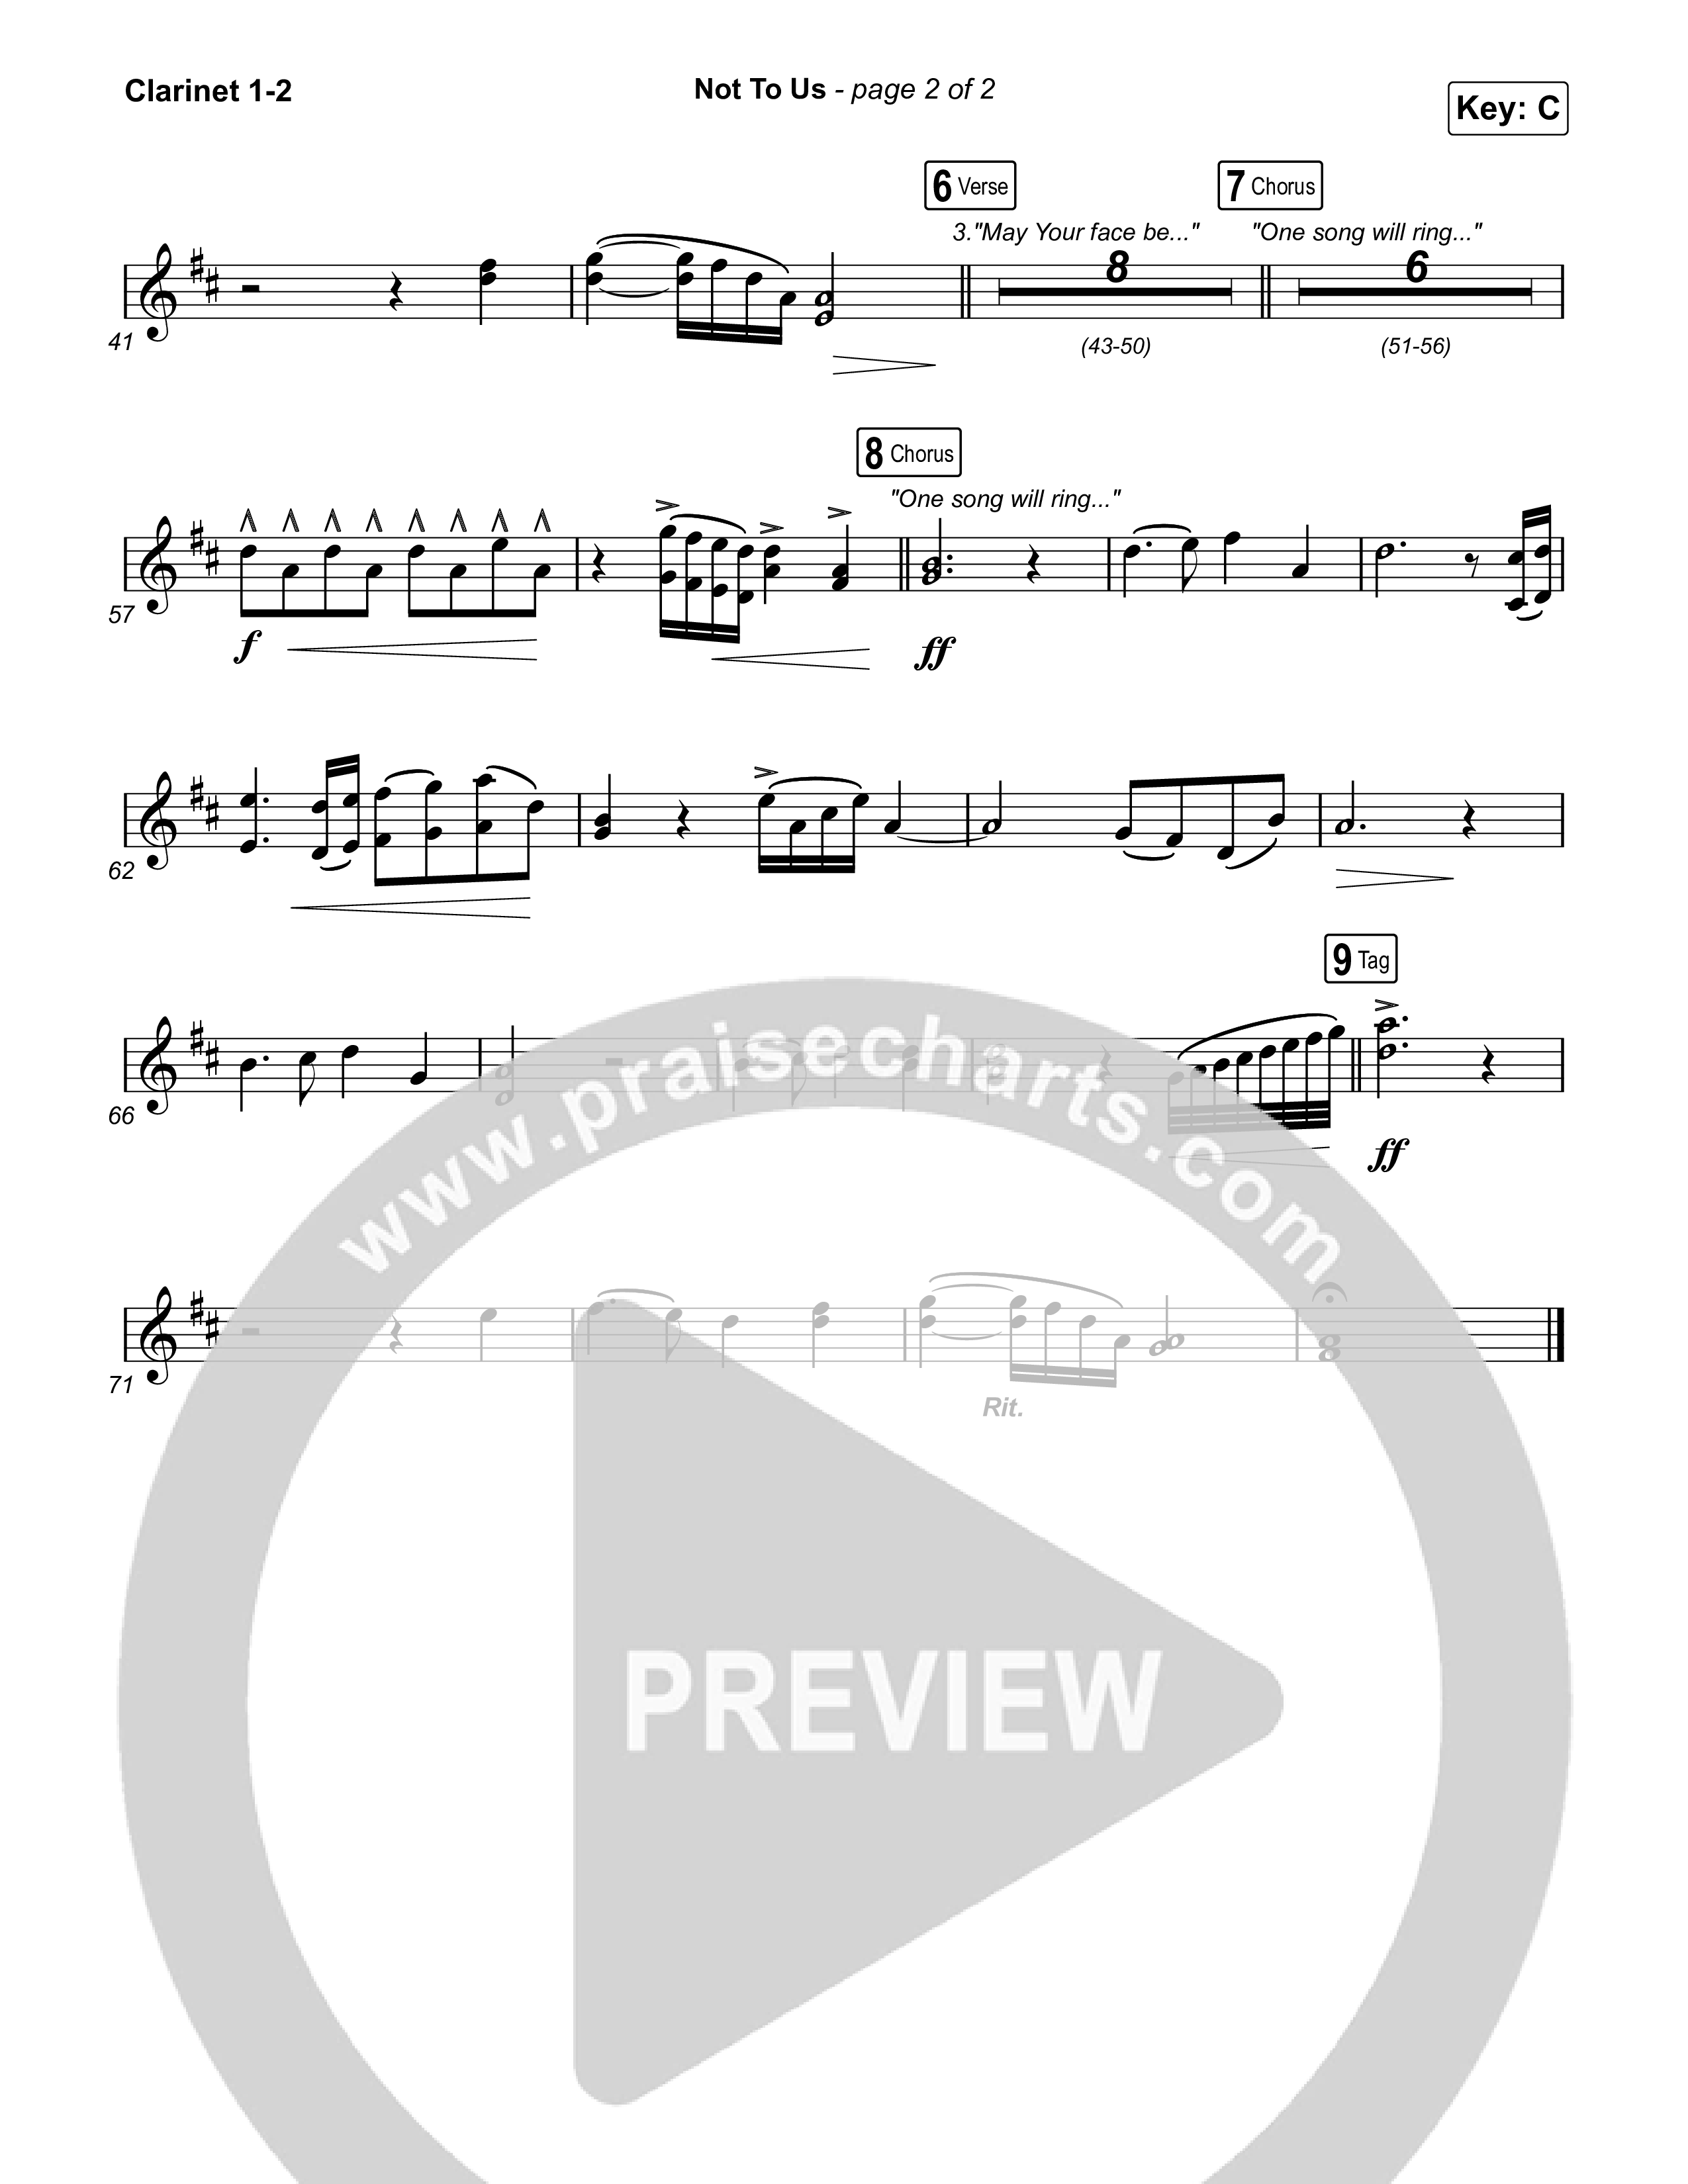 Not to Us (One Name Forever Shall Be Praised) Clarinet 1/2 (Matt Papa / Matt Boswell / Matt Redman)